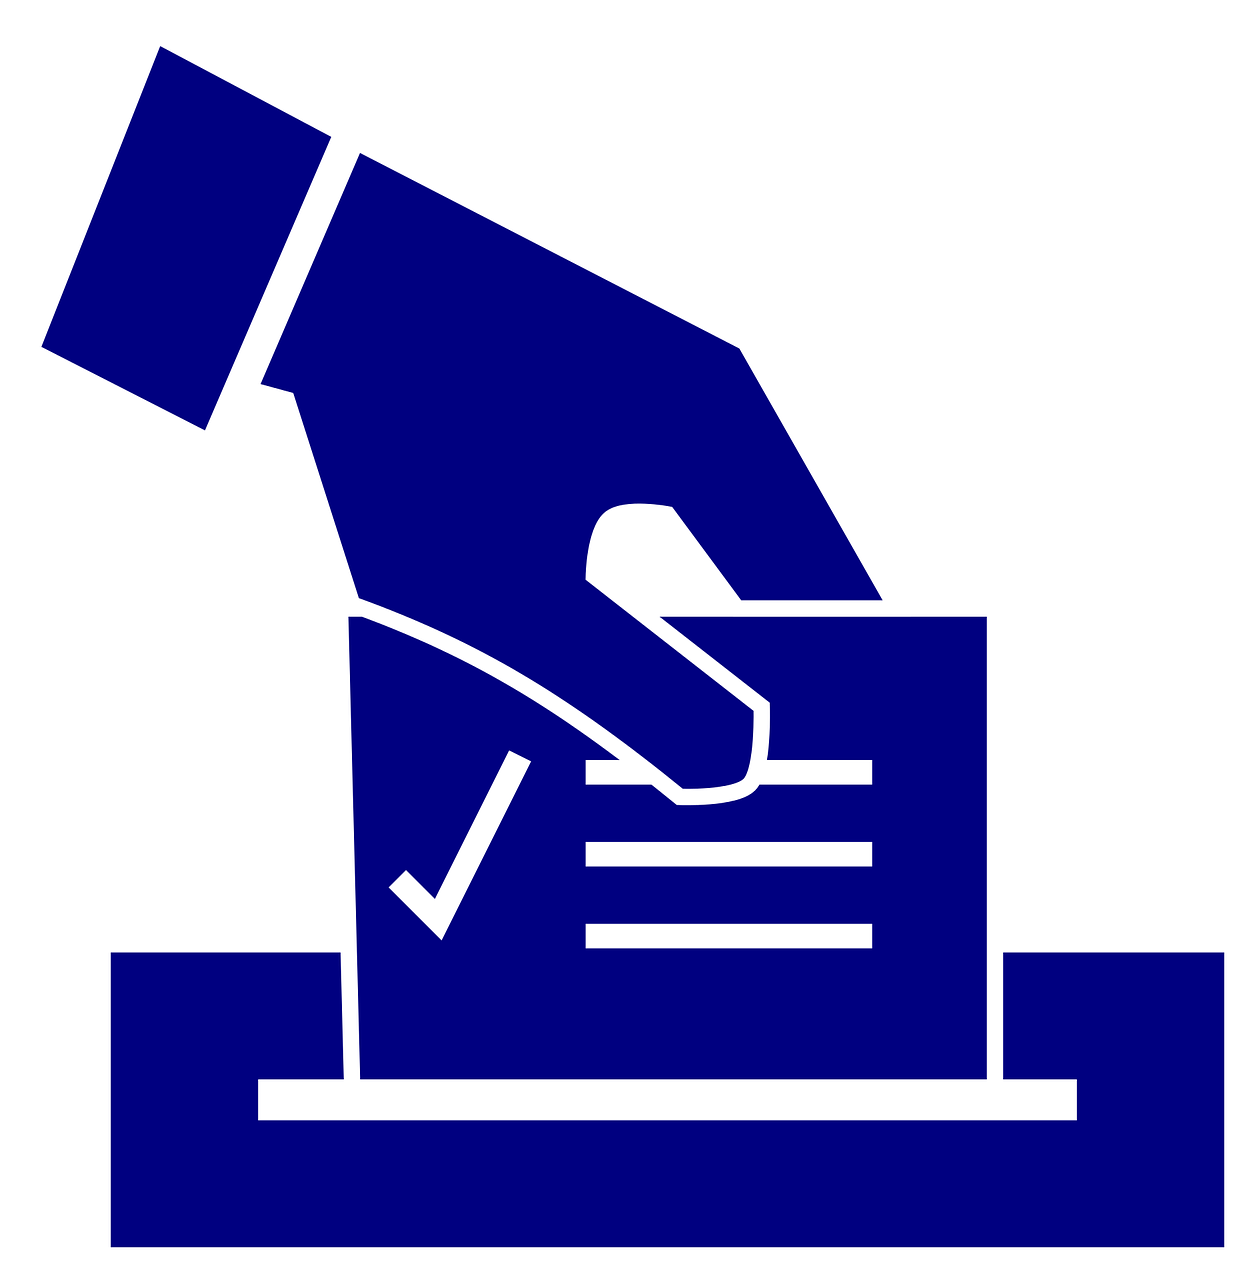 Dysfonctionnements dans l’organisation des élections départementales et régionales de juin 2021
